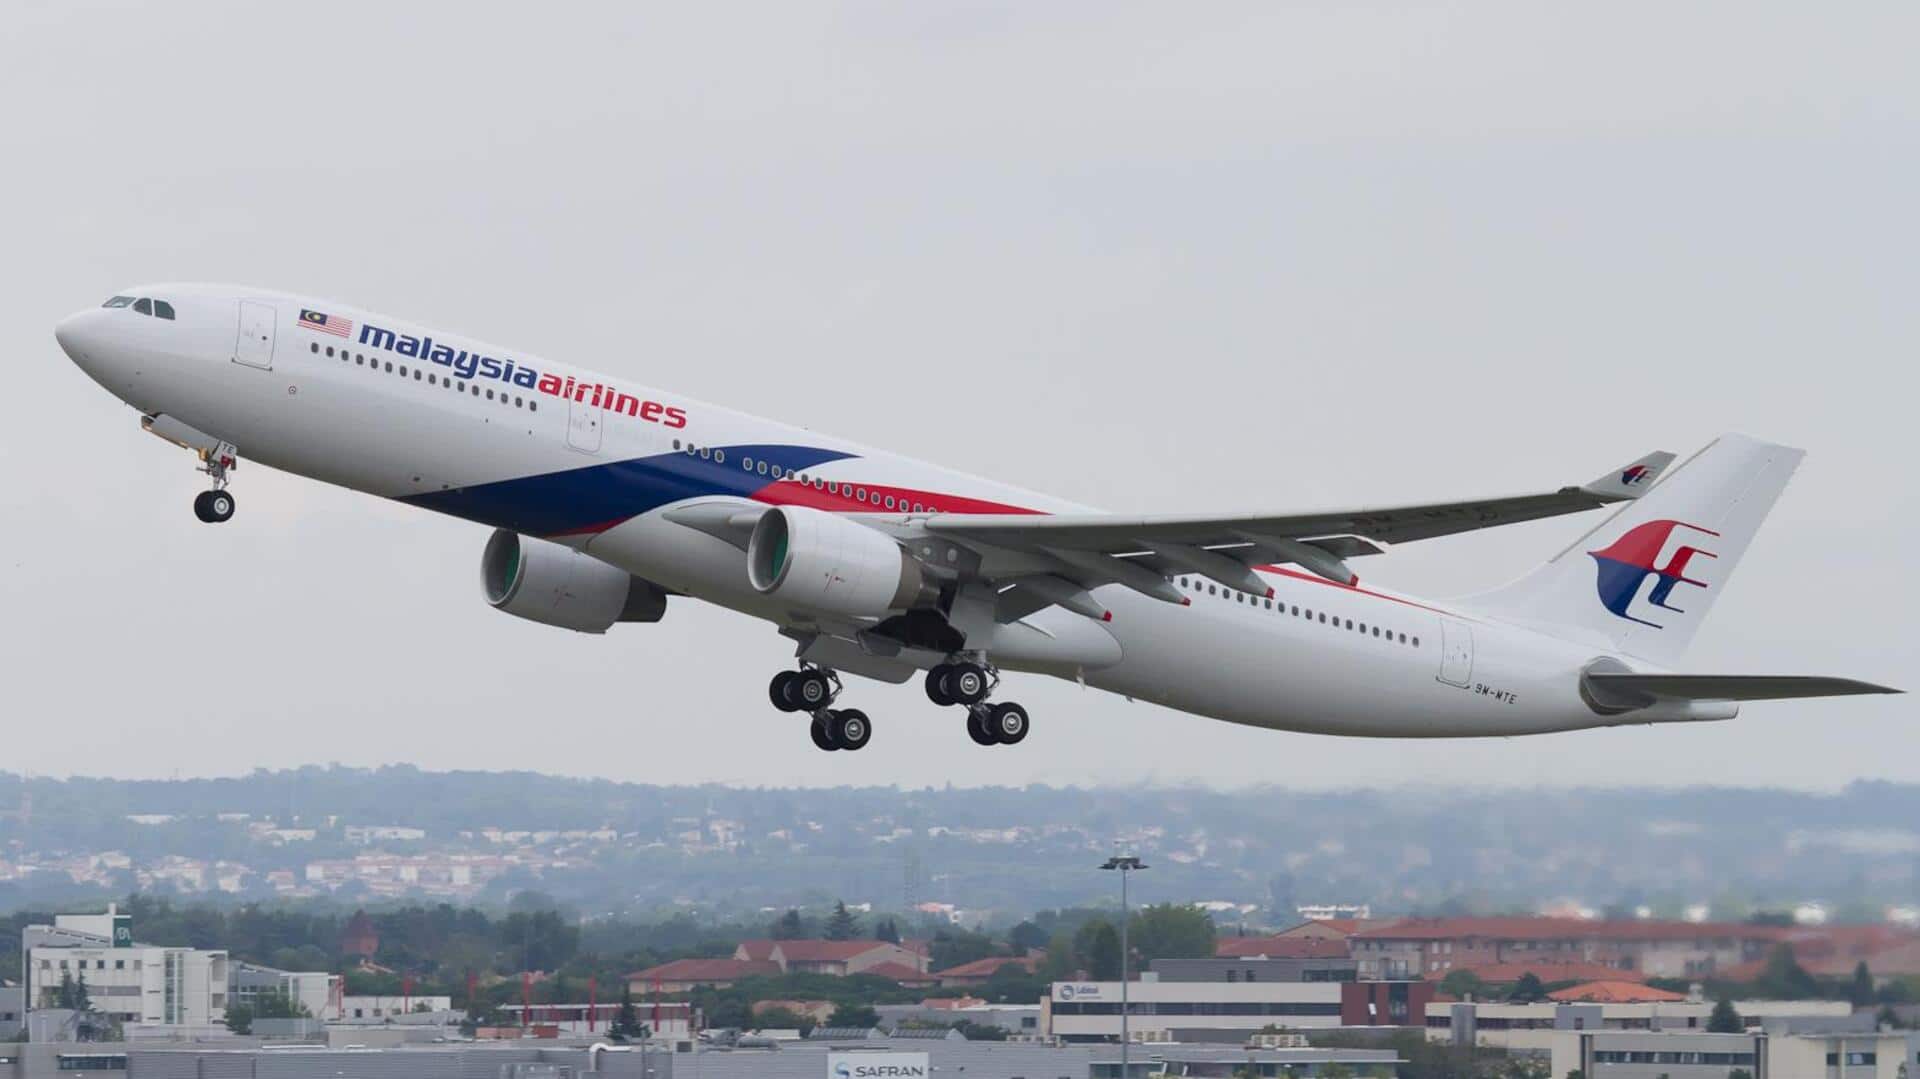 ऑस्ट्रेलिया: मलेशिया एयरलाइंस की सिडनी-कुआलालंपुर फ्लाइट में यात्री ने दी बम विस्फोट की धमकी, गिरफ्तार